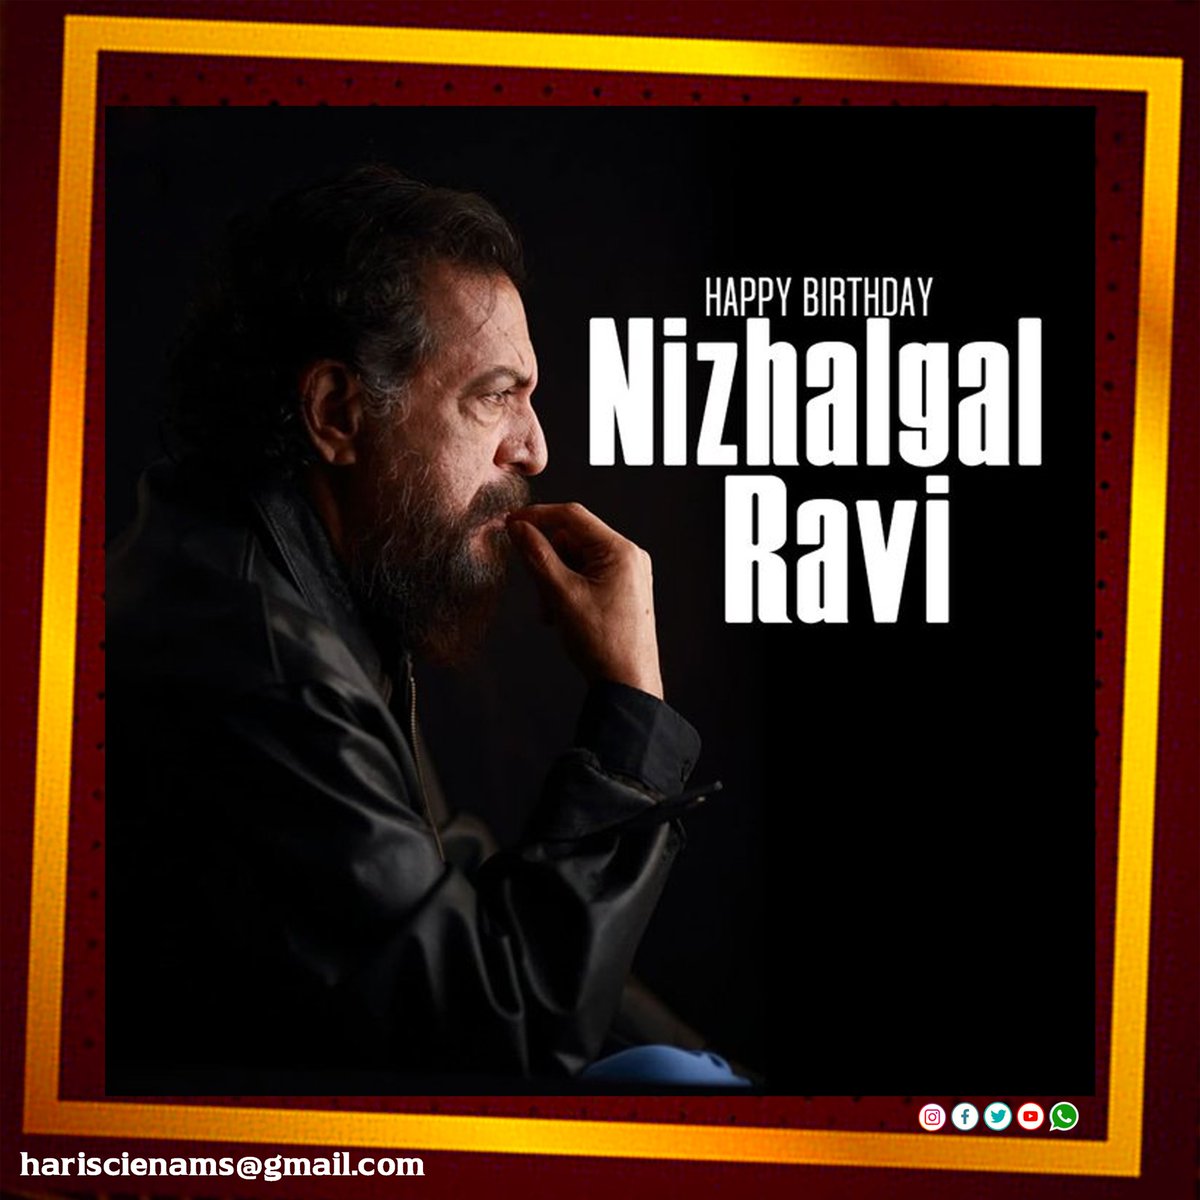 இனிய பிறந்தநாள் நல்வாழ்த்துகள் #NizhalgalRavi 🎂📷  
 #HappyBirthdayNizhalgalRavi | #HBDNizhalgalRavi | #hariscinemas